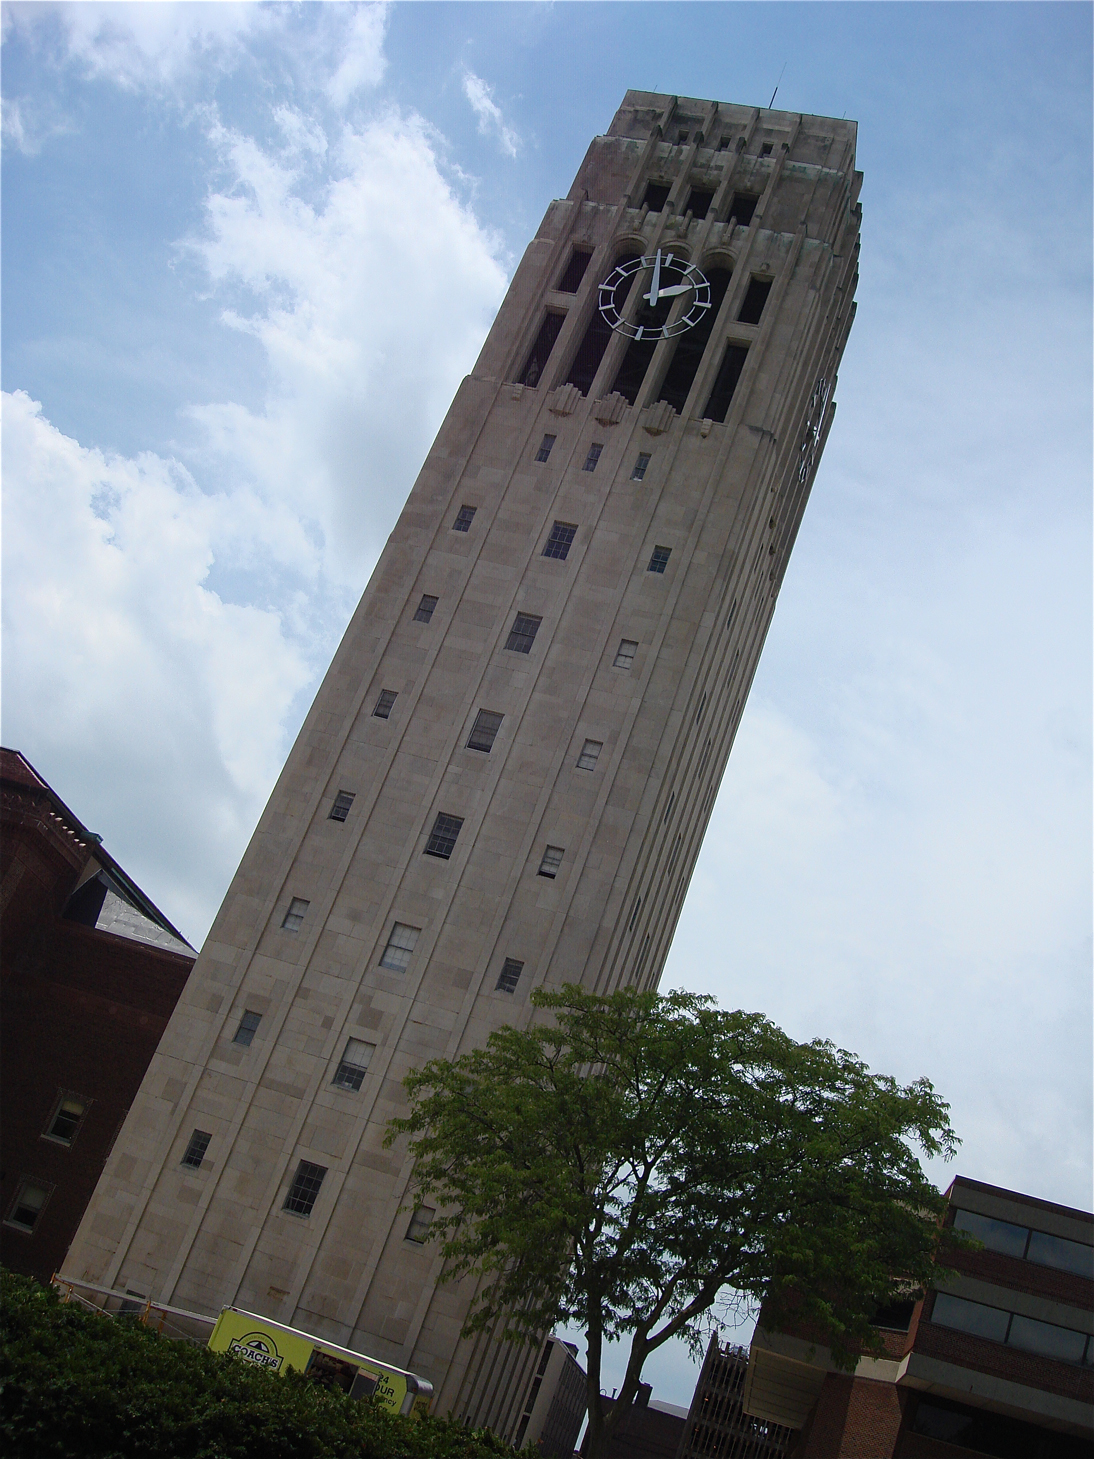 Burton Tower